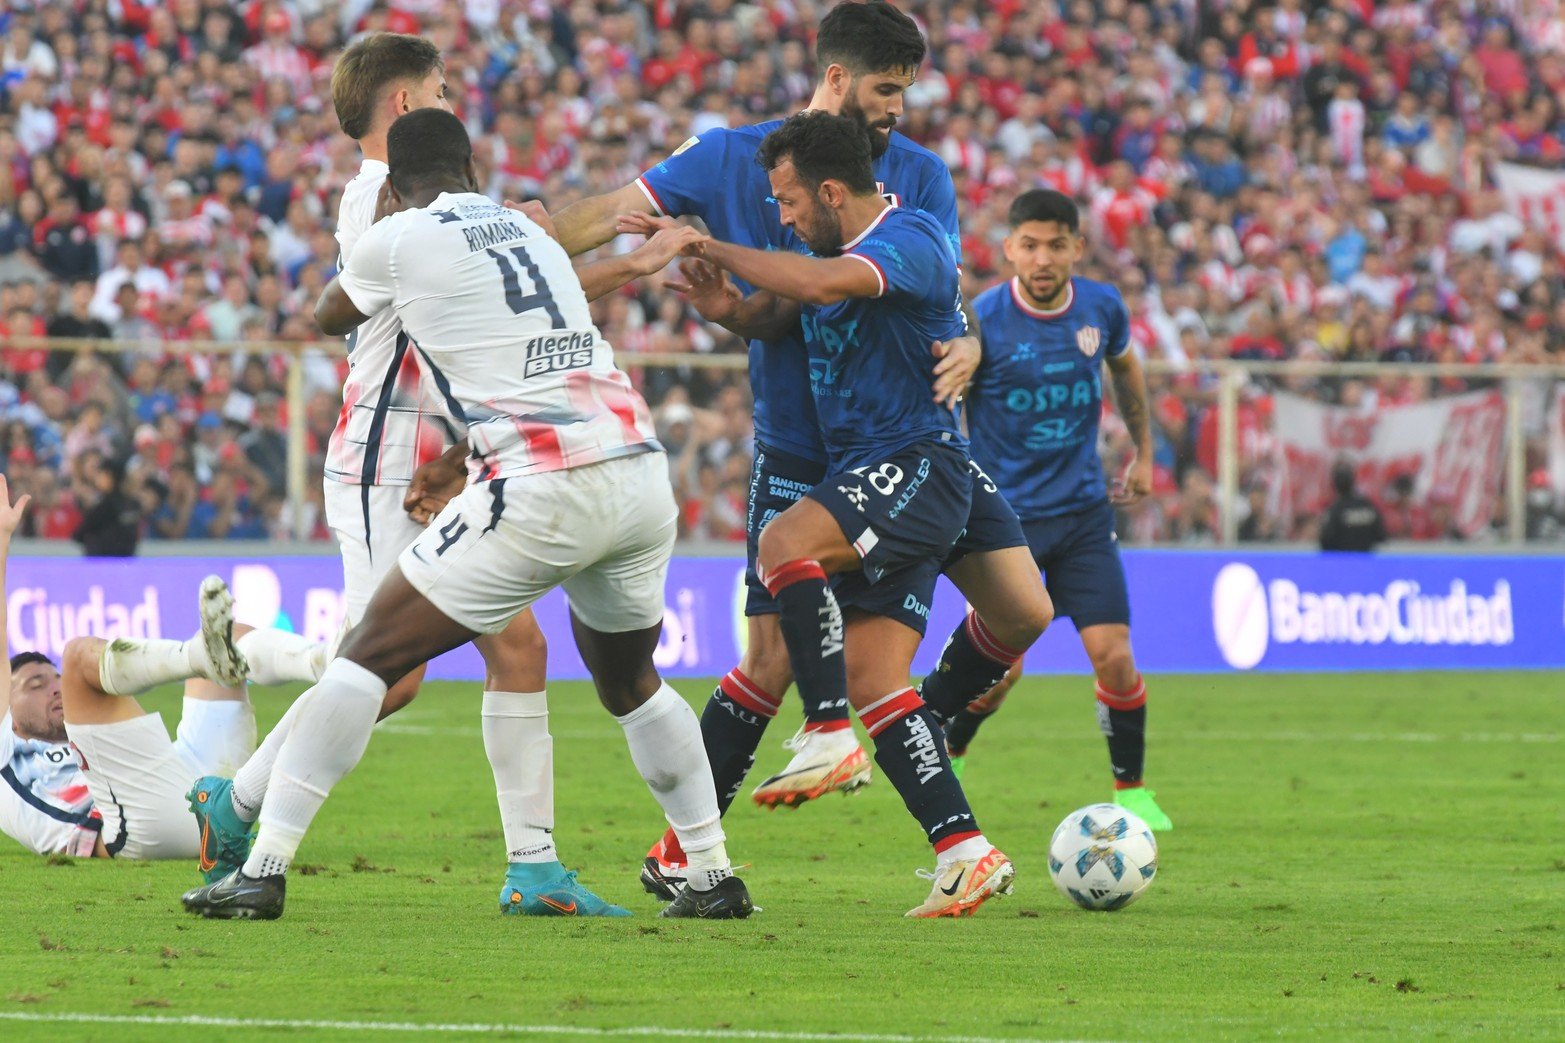 Unión le ganó 2 a 1 a San Lorenzo y se mantiene en la punta del torneo disputadas cinco fechas.